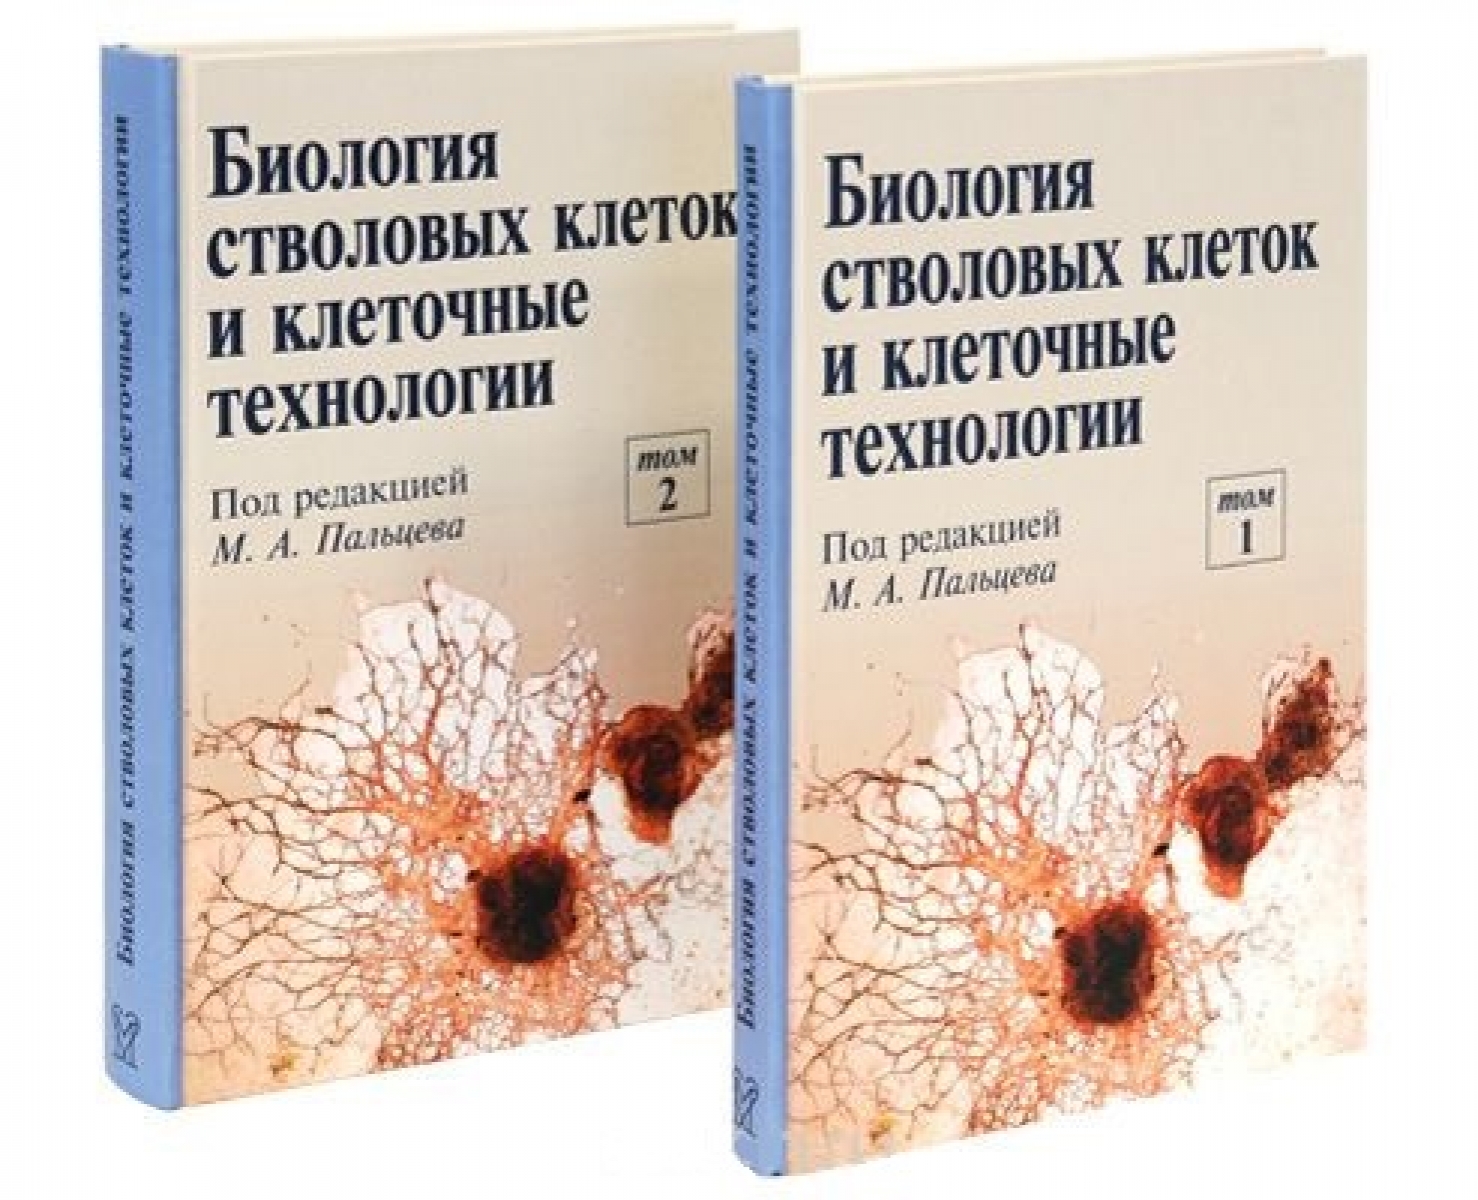 Пальцев М.А. Биология стволовых клеток и клеточные технологии. Книга 2 